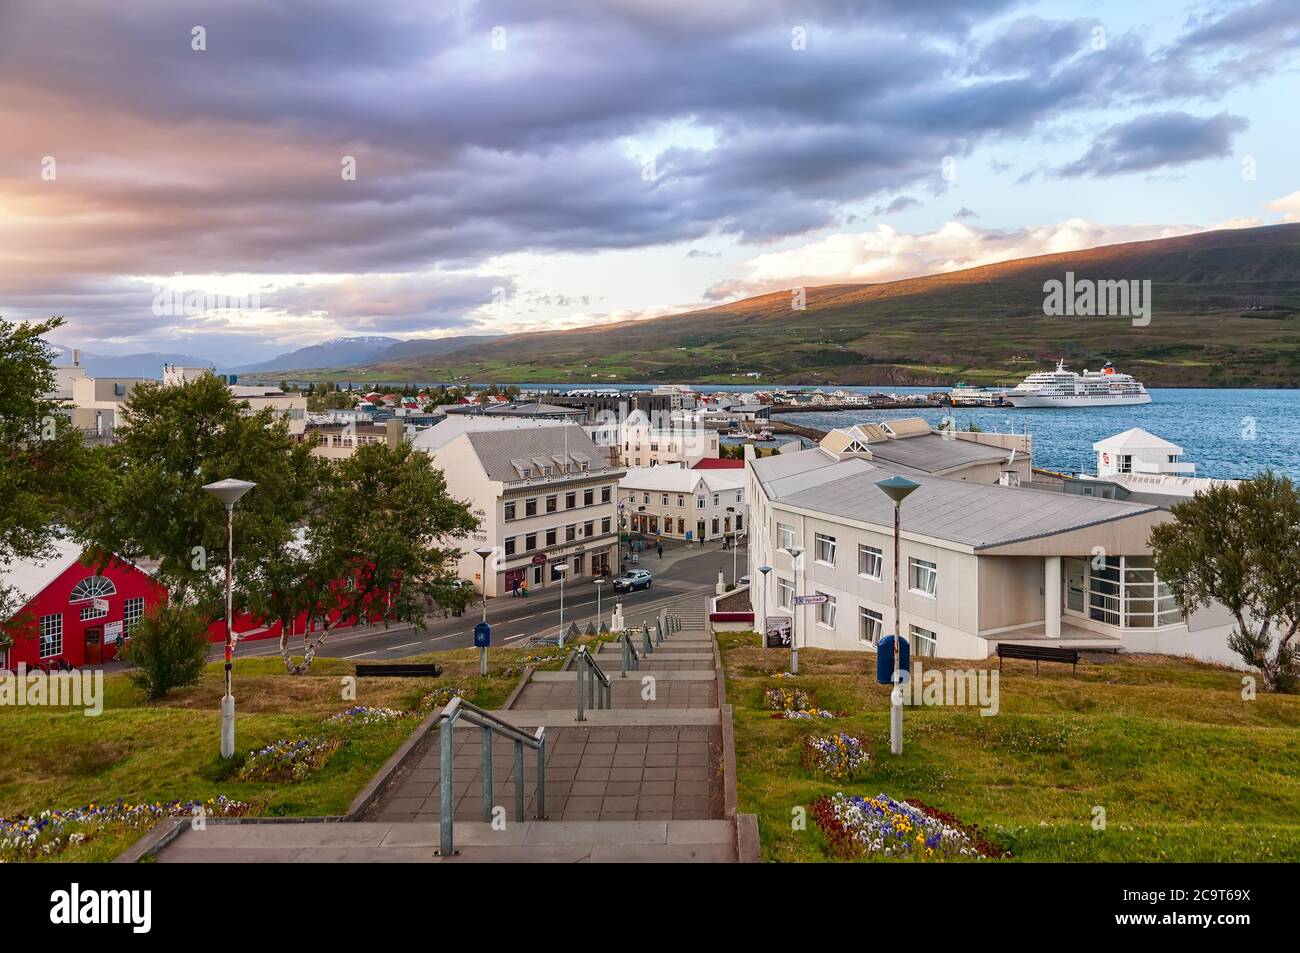 Akureyri, Islande - 8 août 2012 : ciel spectaculaire au-dessus du centre d'Akureyri au crépuscule. Akureyri, la capitale de l'Islande du Nord, est un port important Banque D'Images